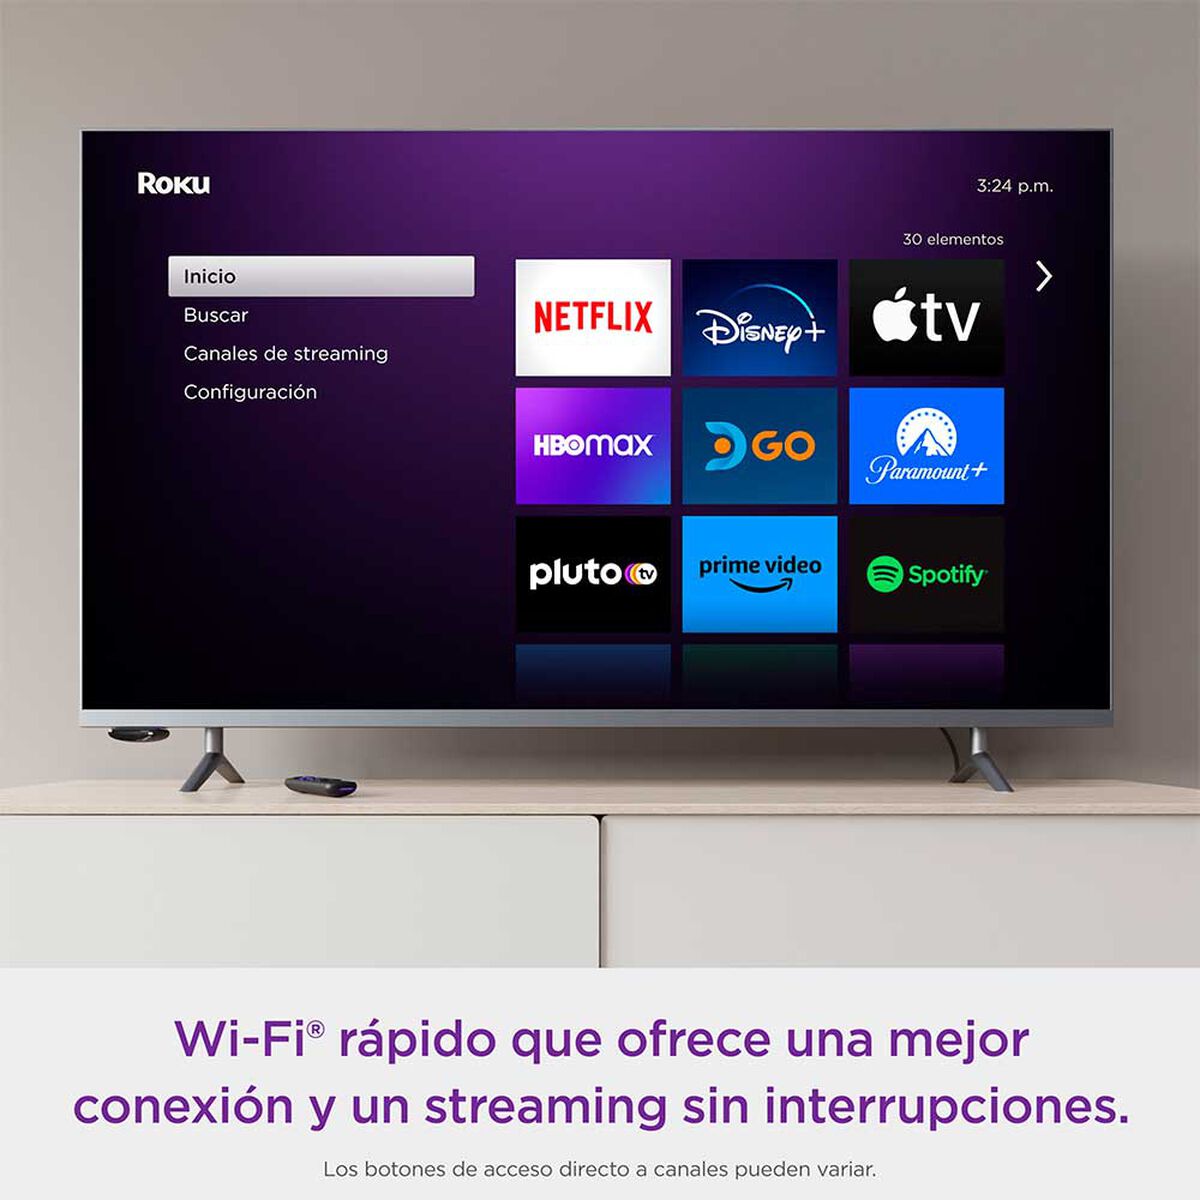 Zapping TV llega a Roku en Chile